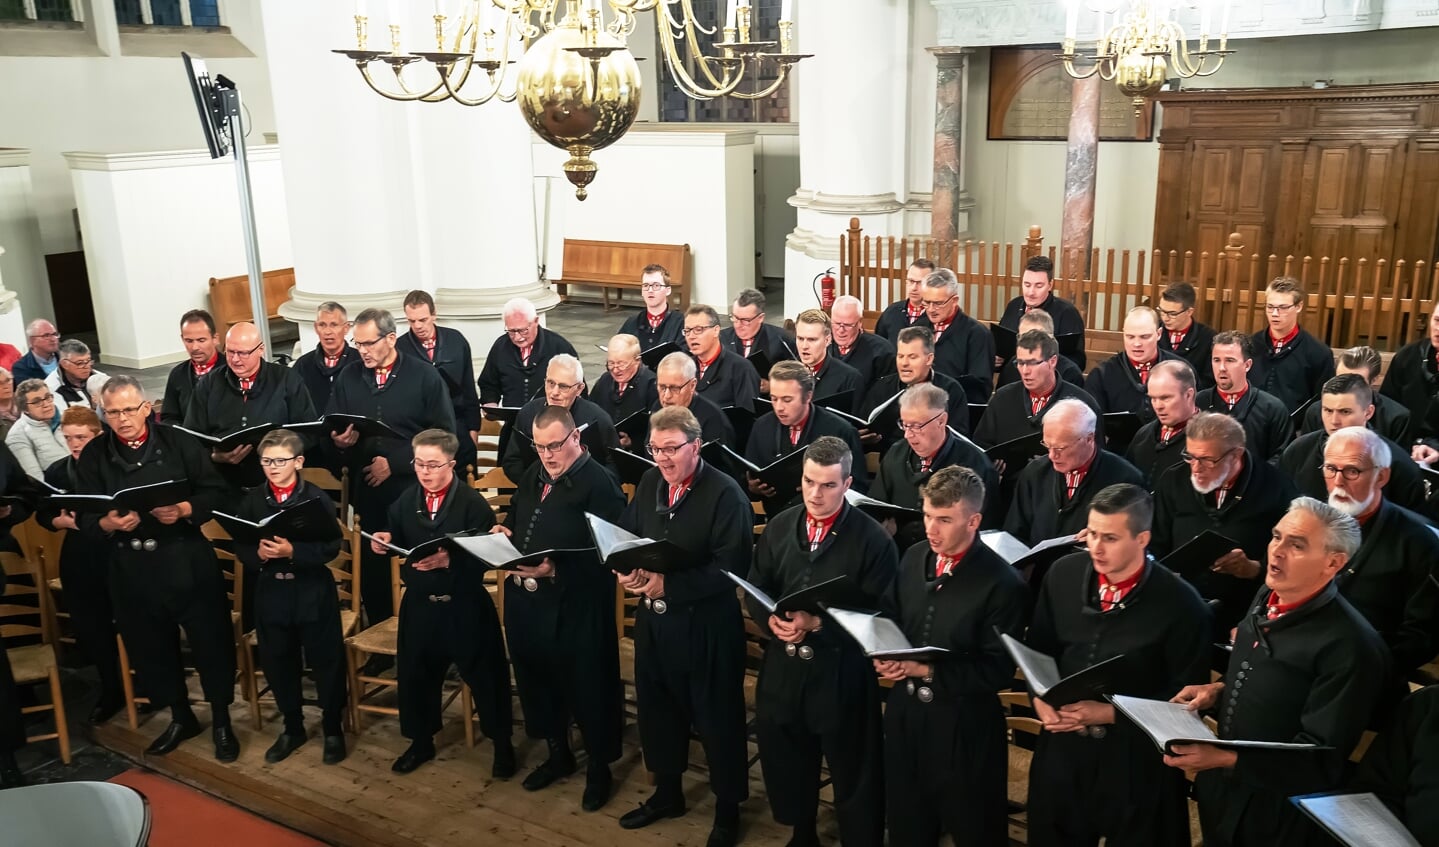 Concert Urker Mannenkoor Hallelujah in Grote Kerk Vianen